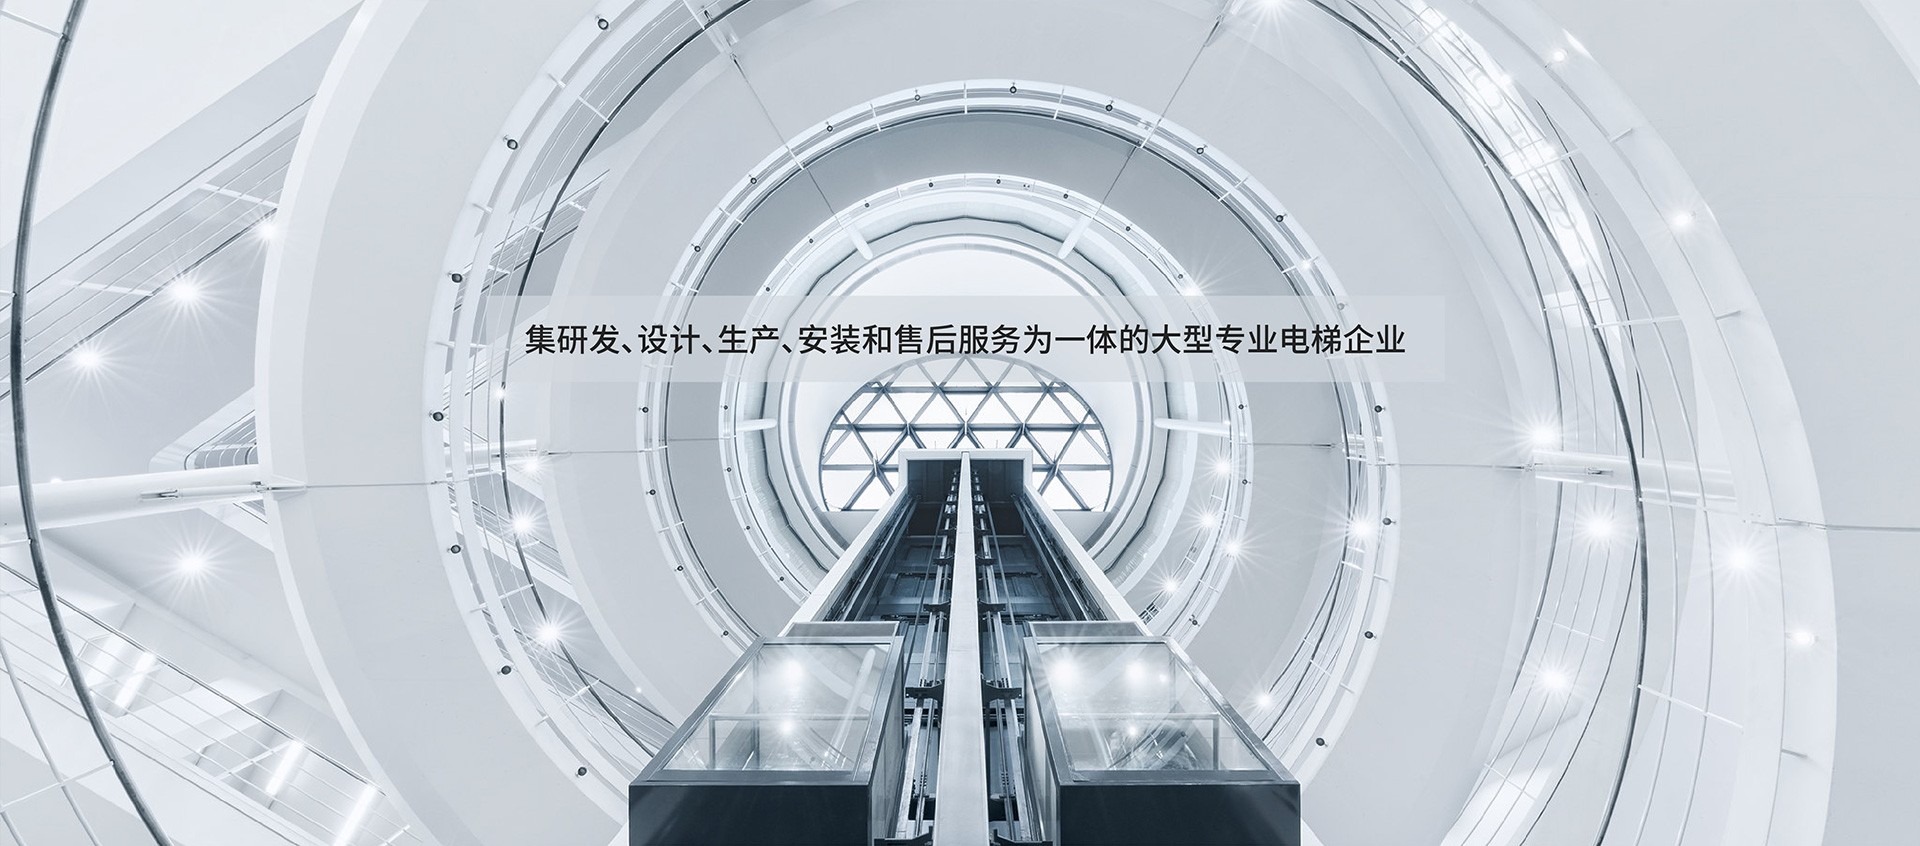 天津滨海三洋电梯有限公司